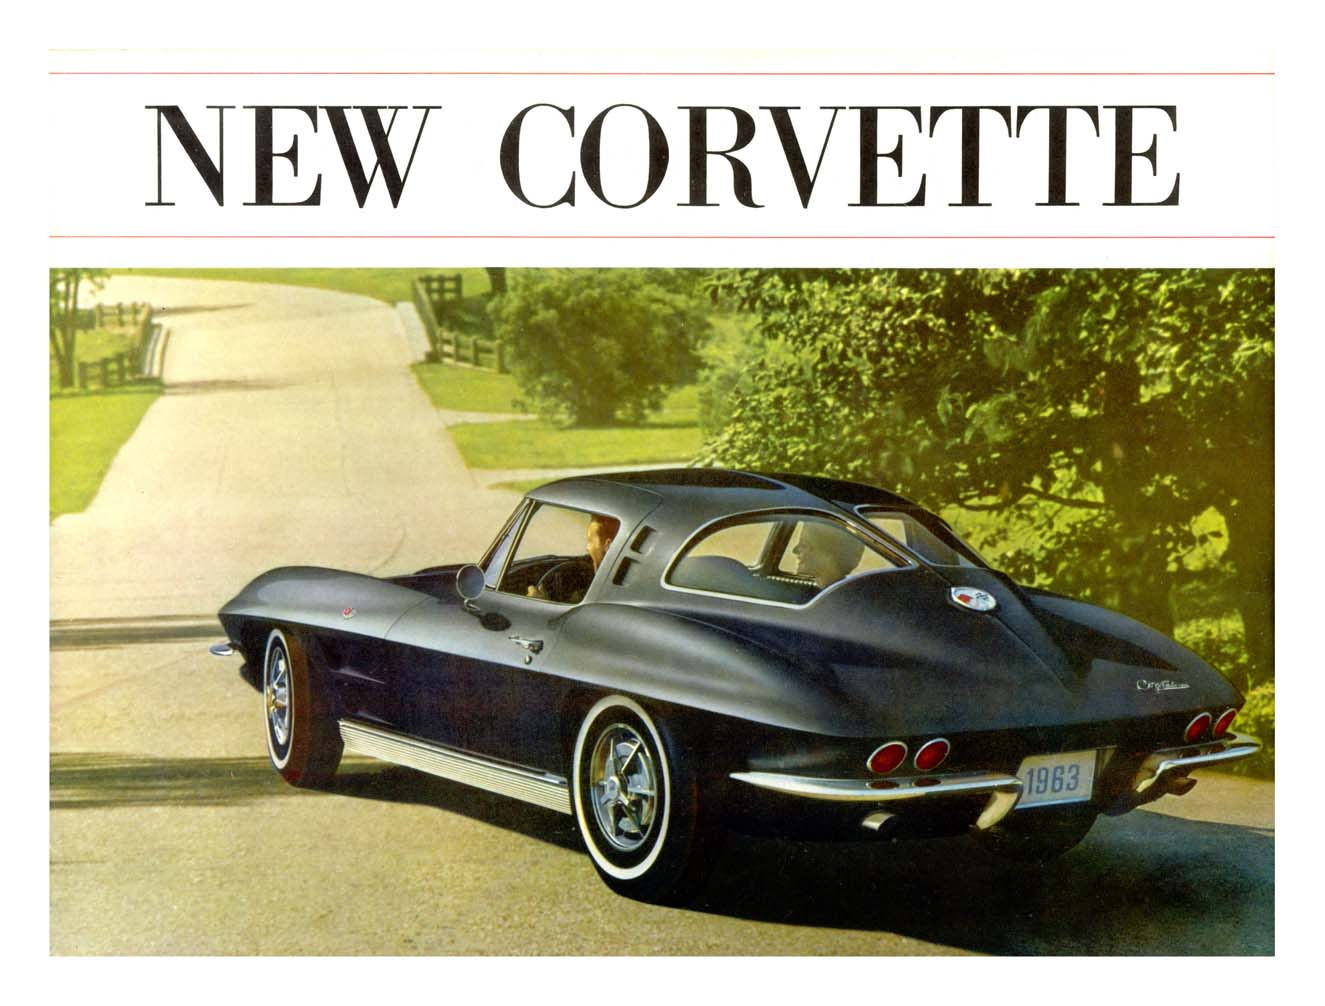 1963_Chevrolet_Corvette-01